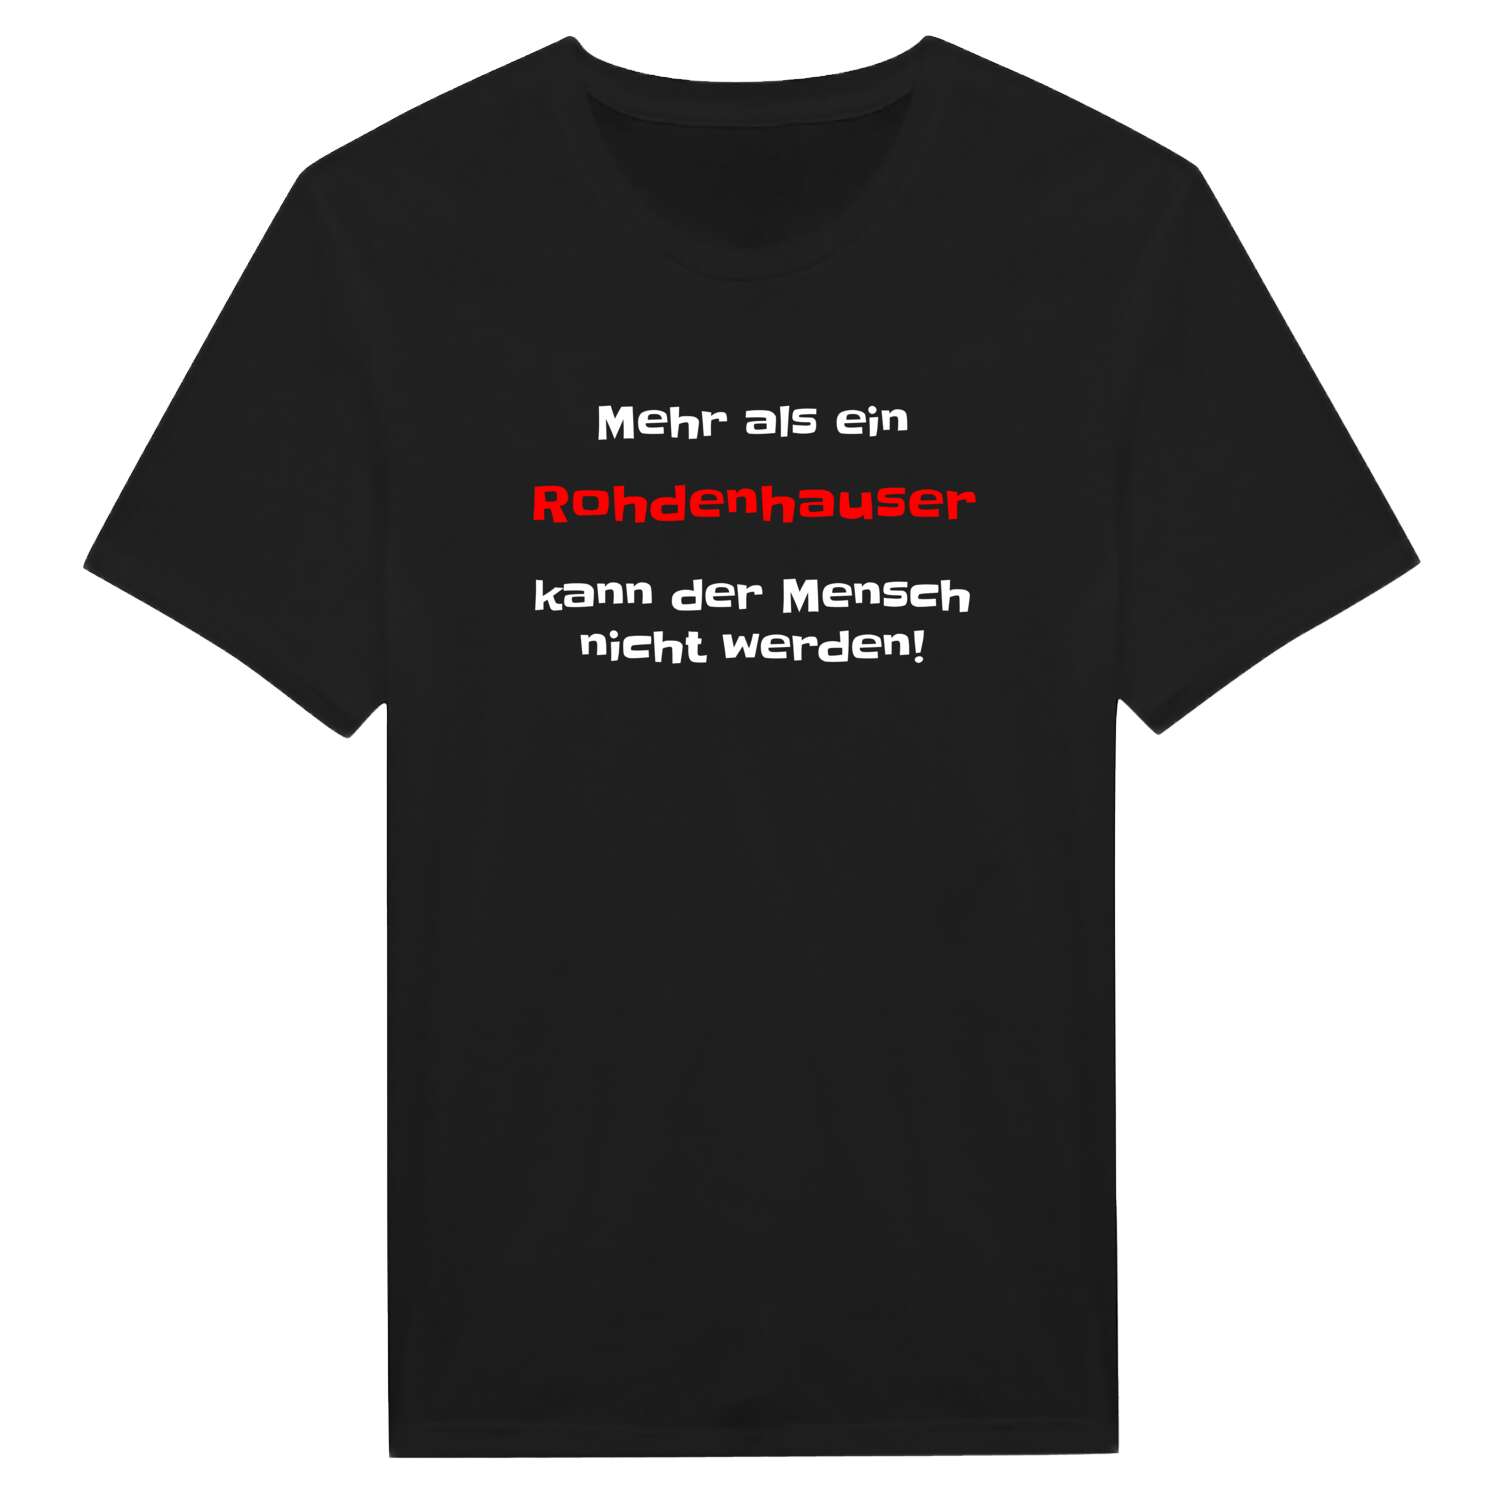 Rohdenhaus T-Shirt »Mehr als ein«